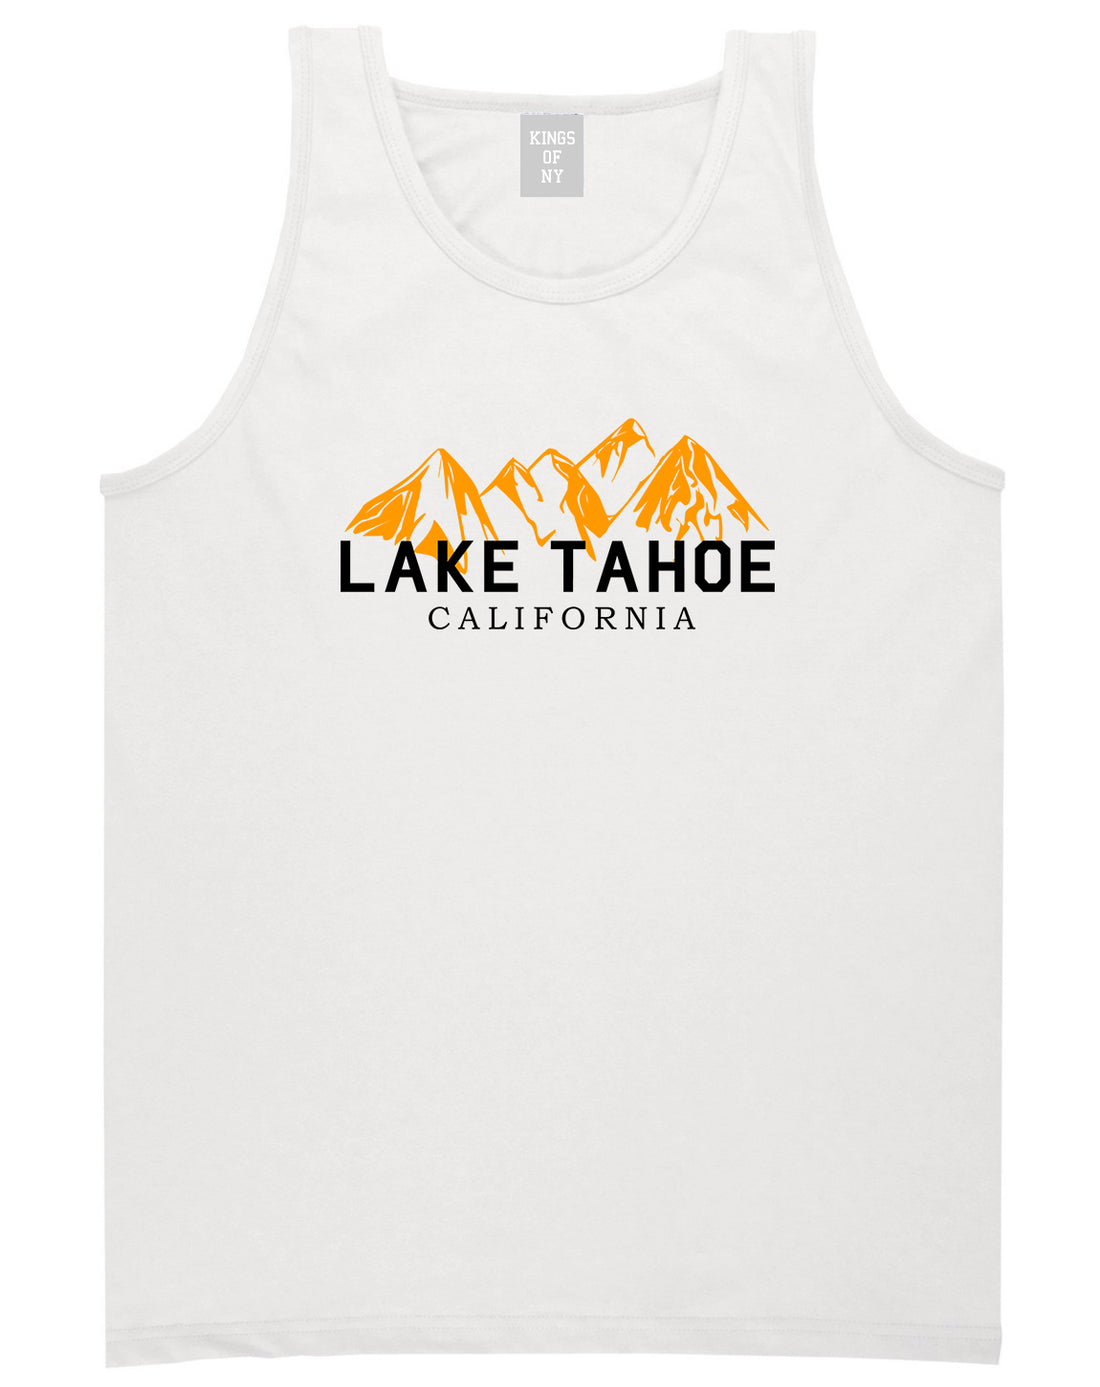 Lake Tahoe California Mountains Mens Tank Top Shirt White